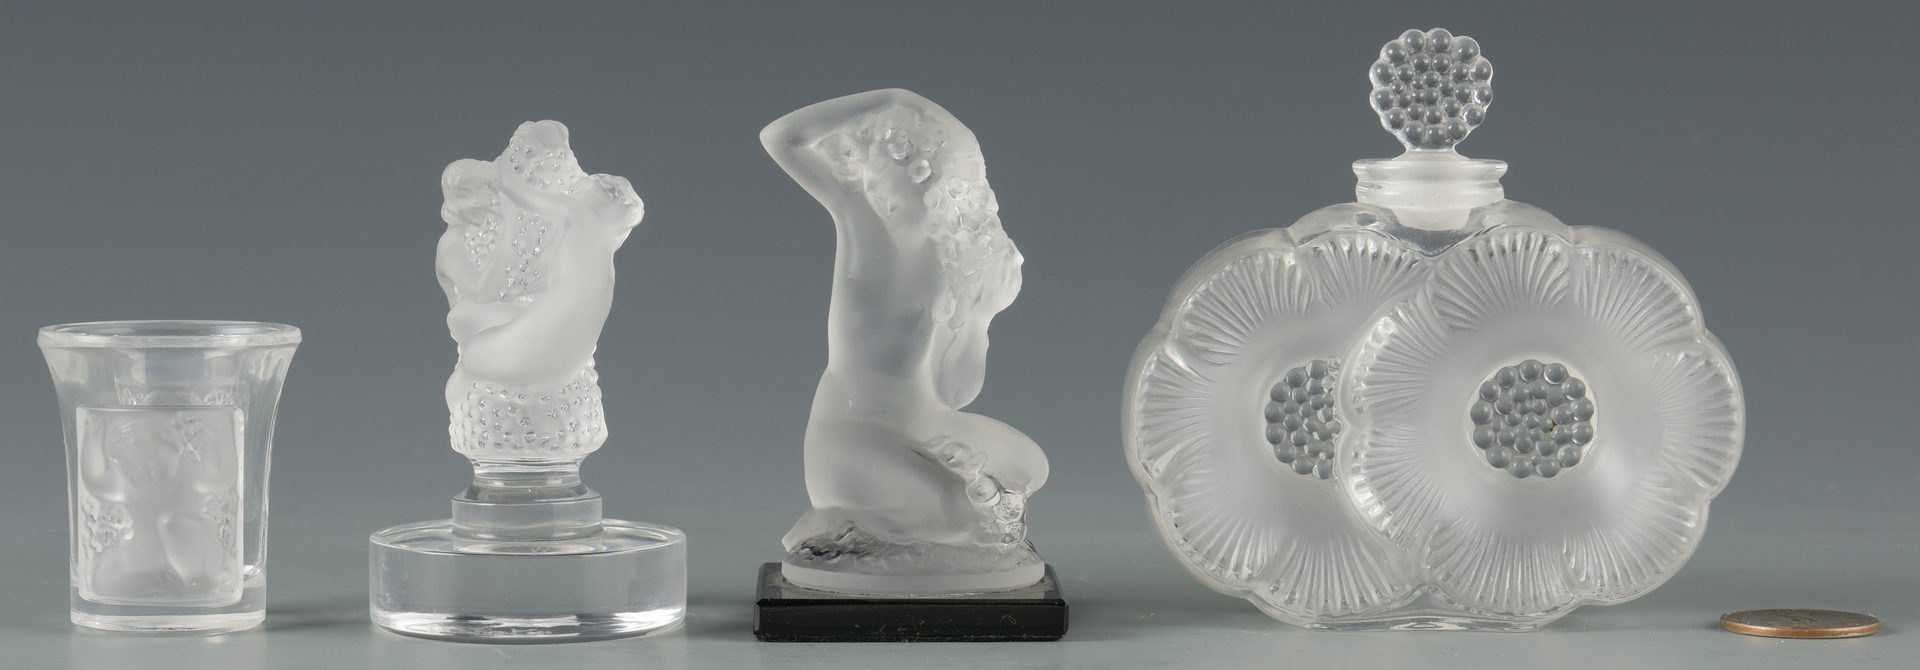 Lot 420: Group of Lalique Glassware, 10 pcs